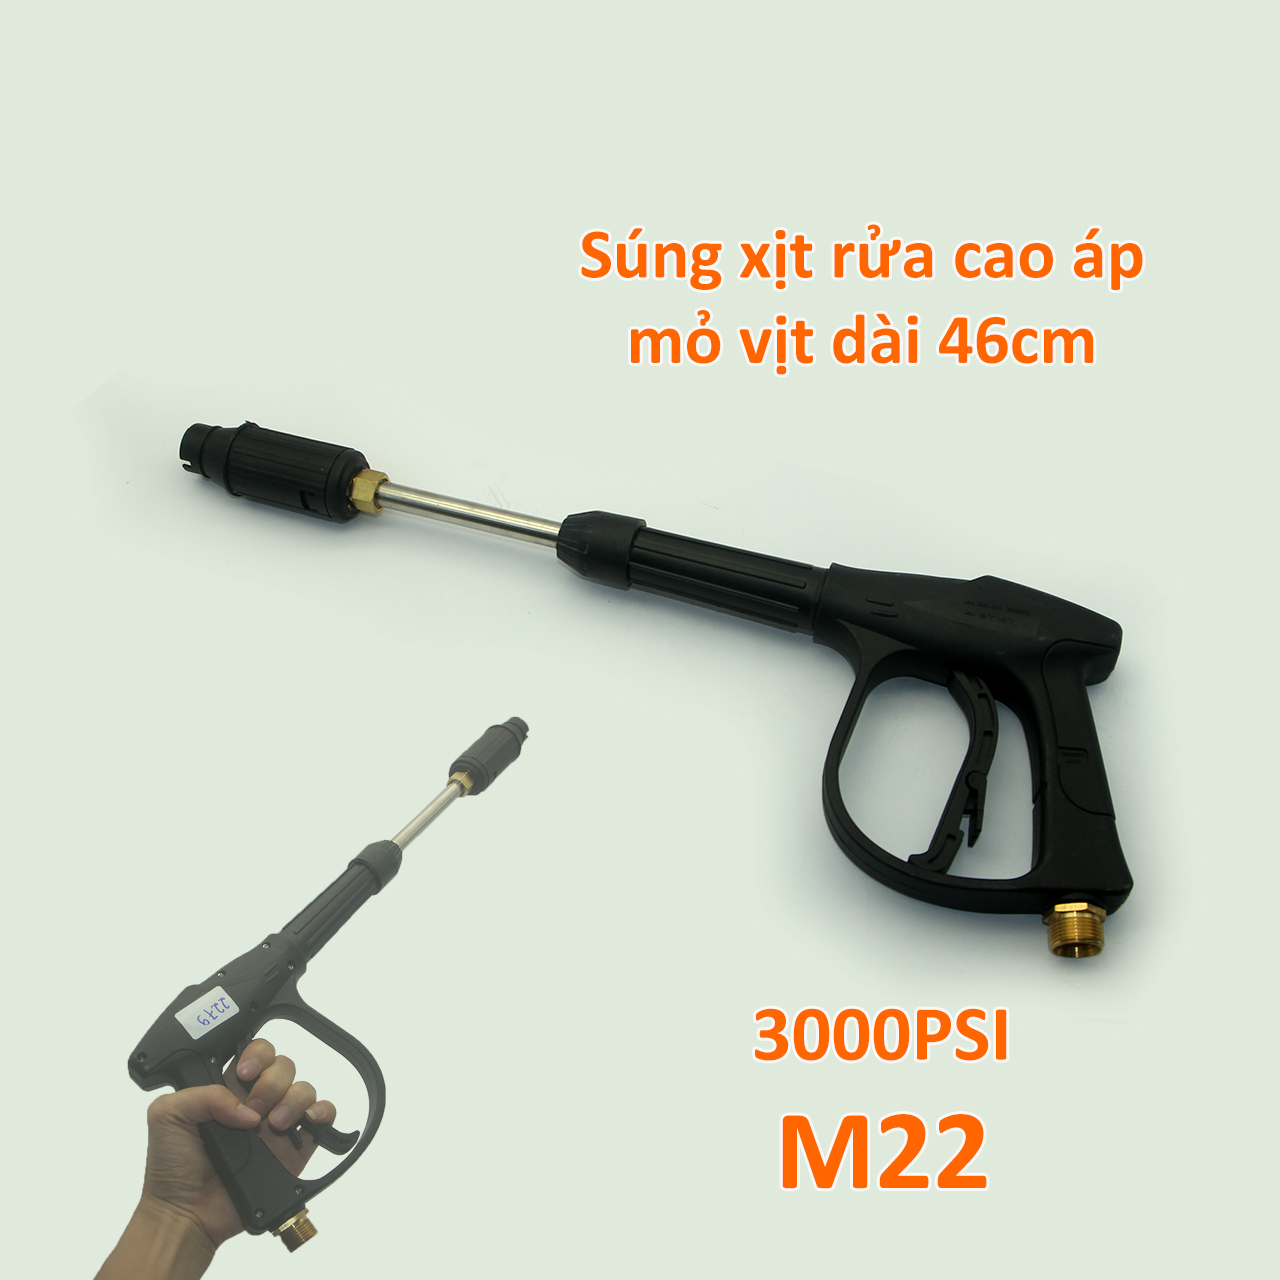 Súng xịt rửa cao áp 3000psi mỏ vịt chỉnh tia dài 46cm ren to M22, có thể tháo khớp nòng thành súng ngắn